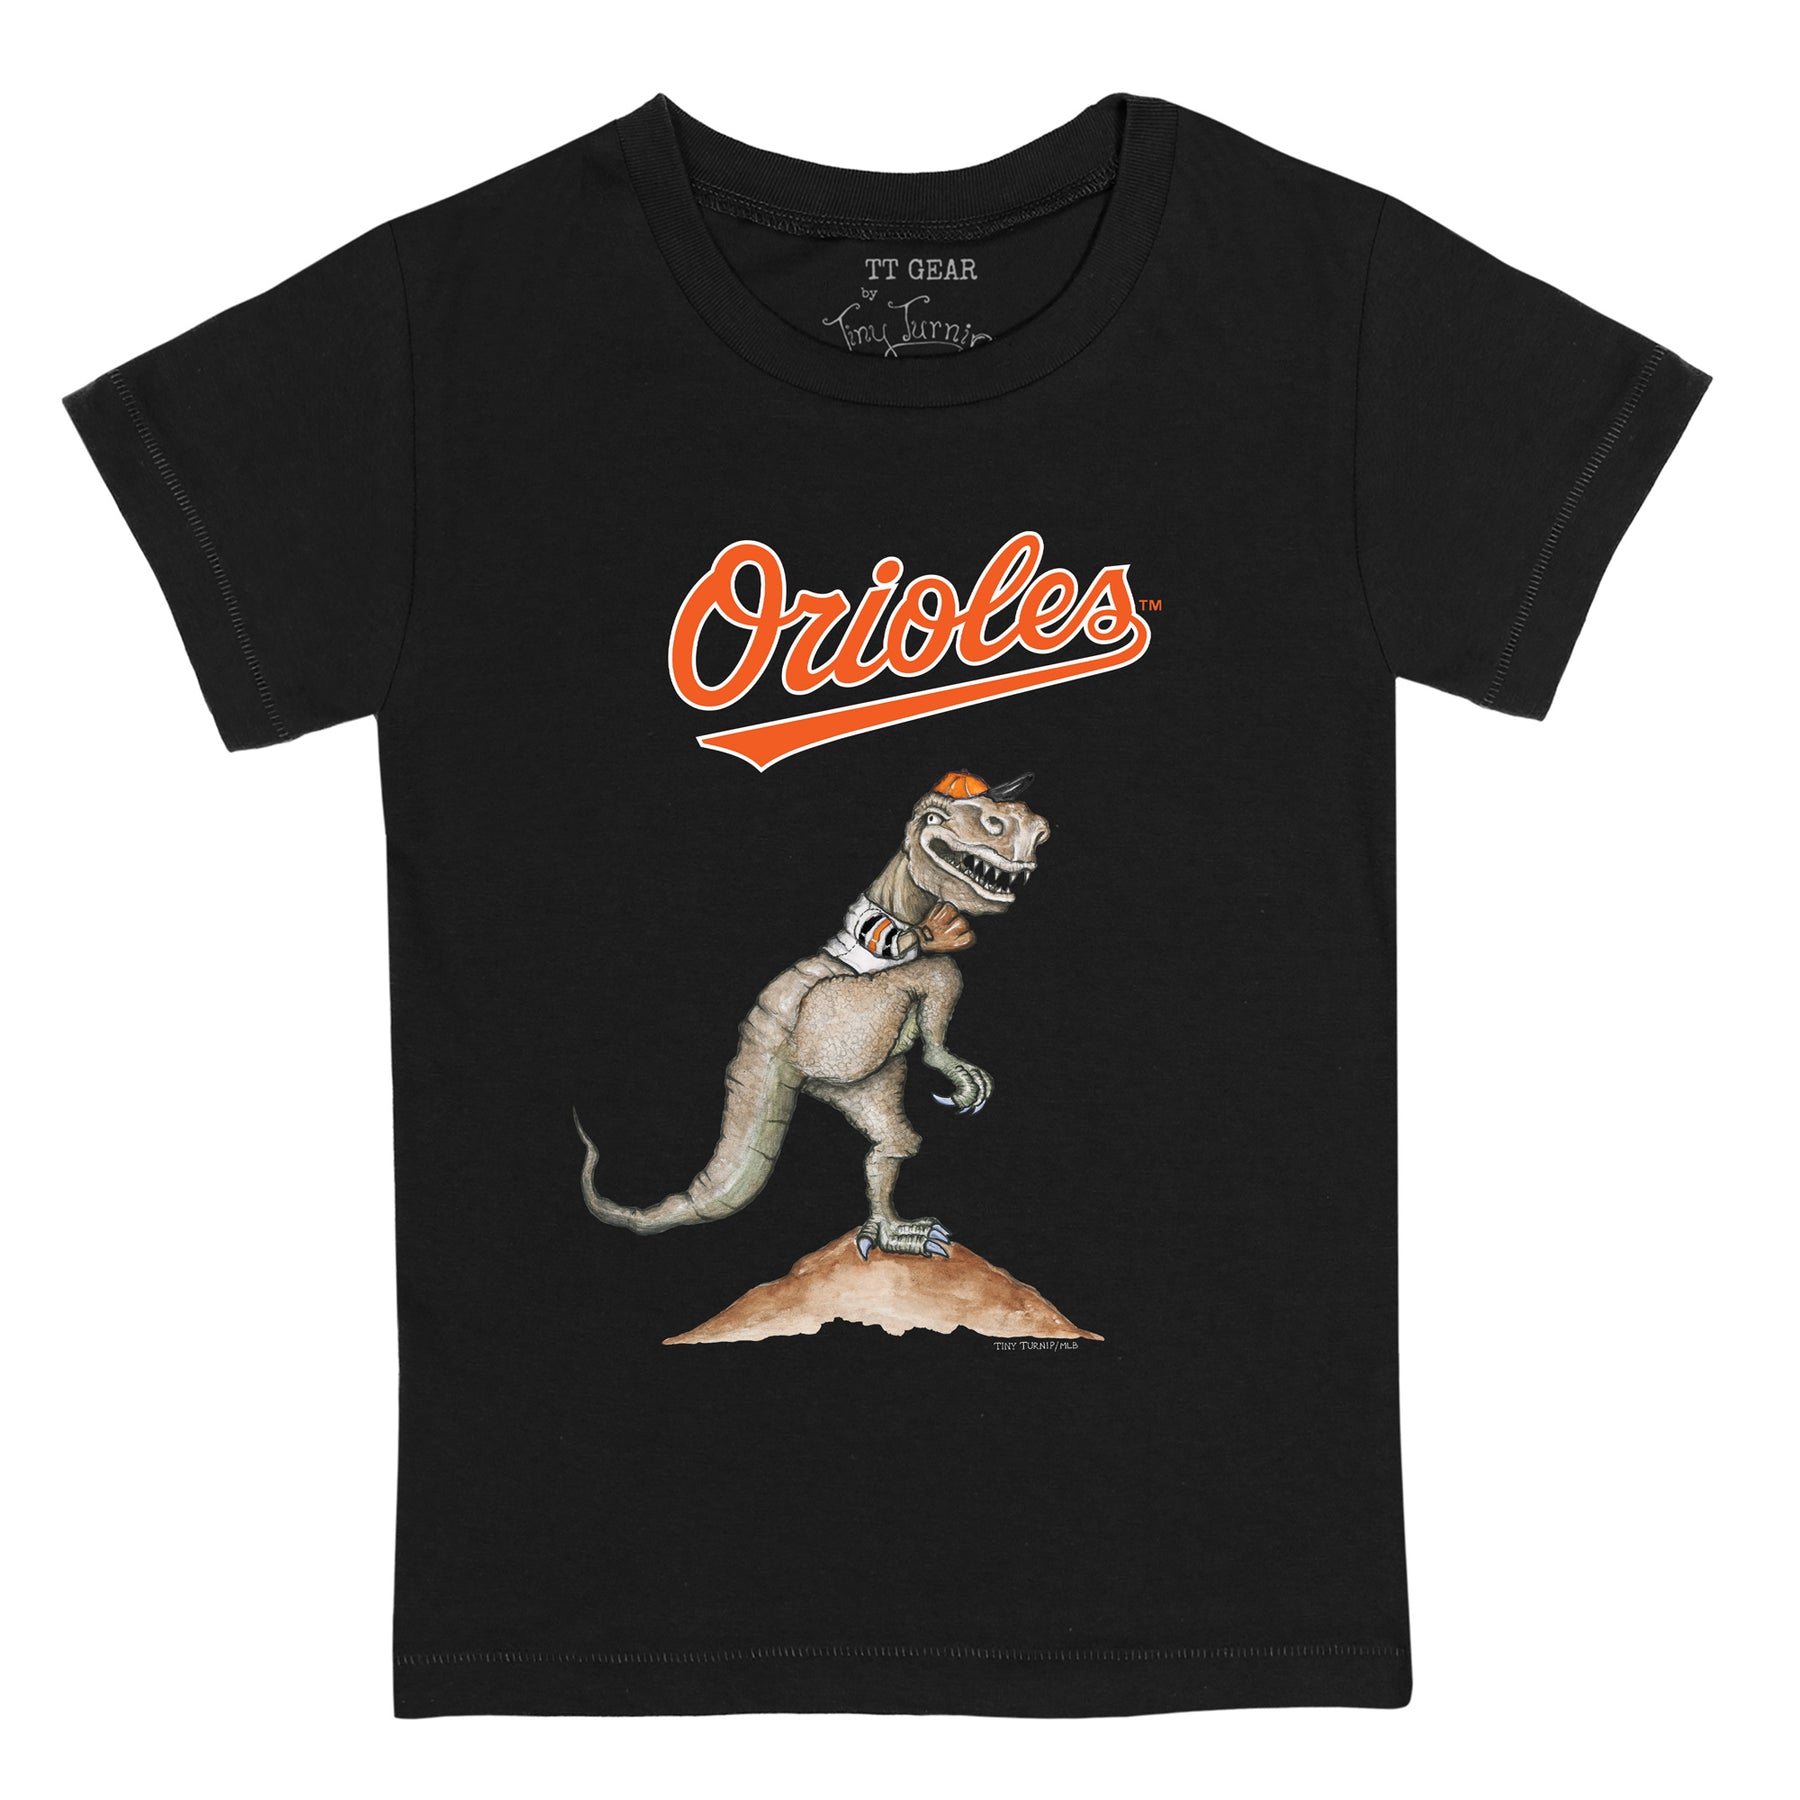 Baltimore Orioles TT Rex Tee Shirt